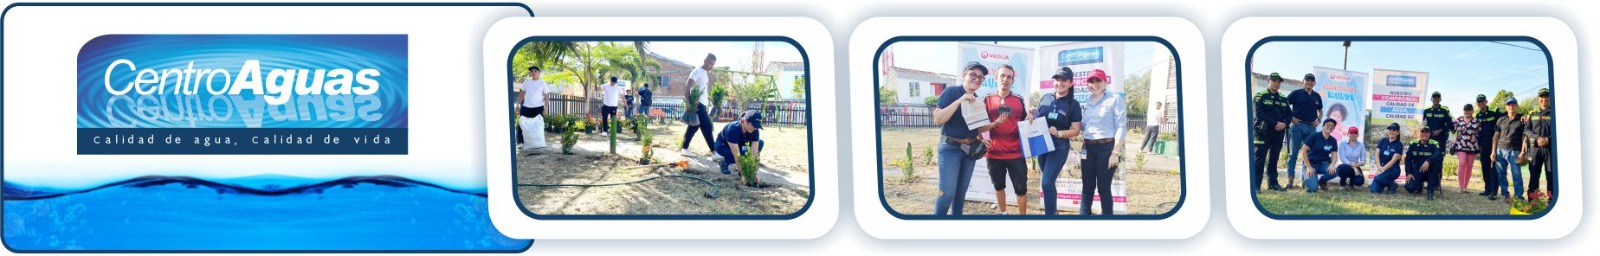 Diseño con tres fotografías donde se ve al personal de la empresa realizando labores de limpieza y adecuación del parque 